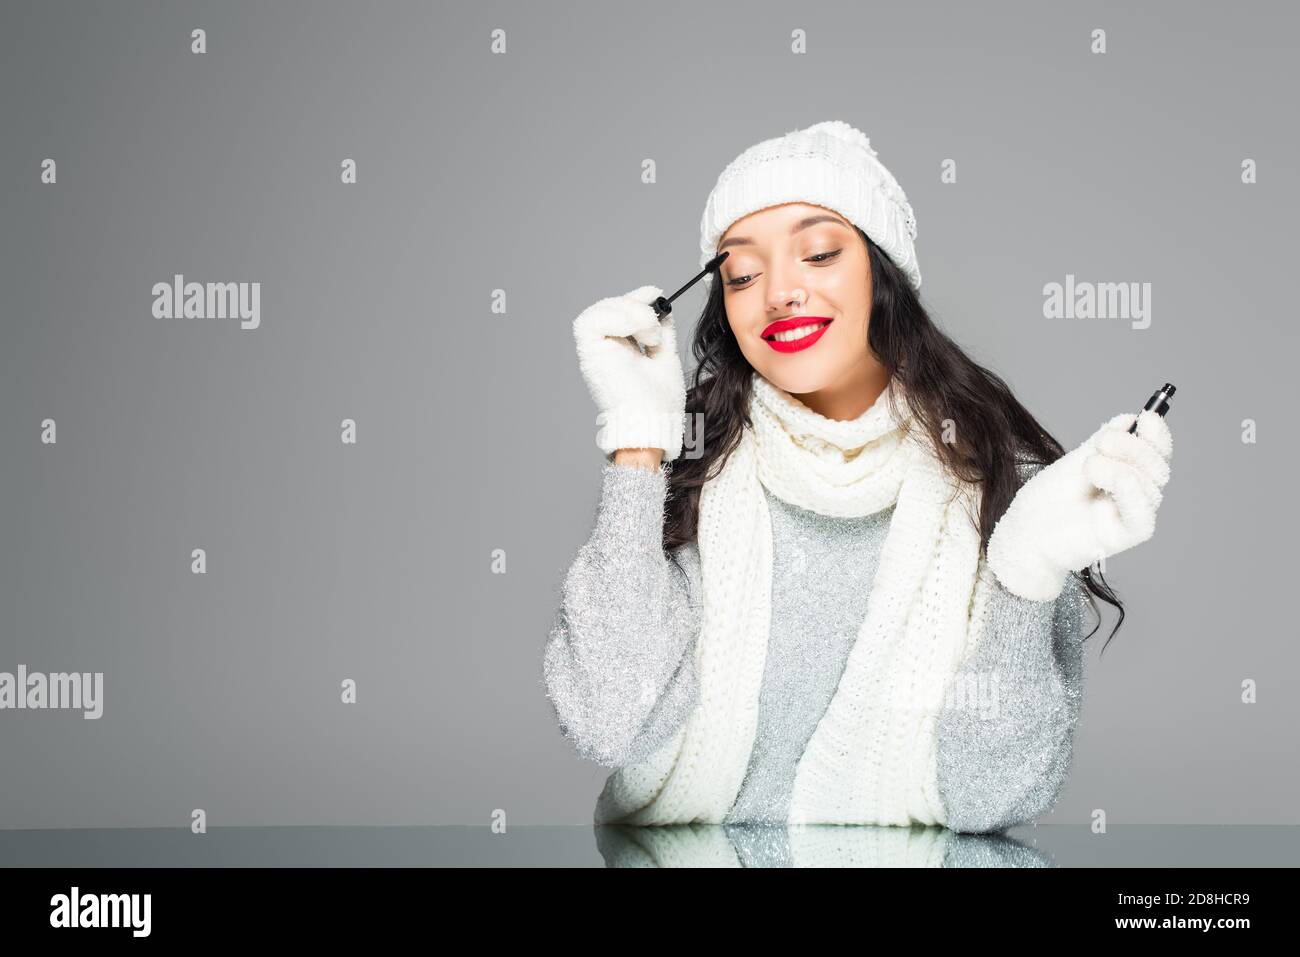 femme joyeuse et brune en tenue d'hiver appliquant la mascara isolée en gris Banque D'Images